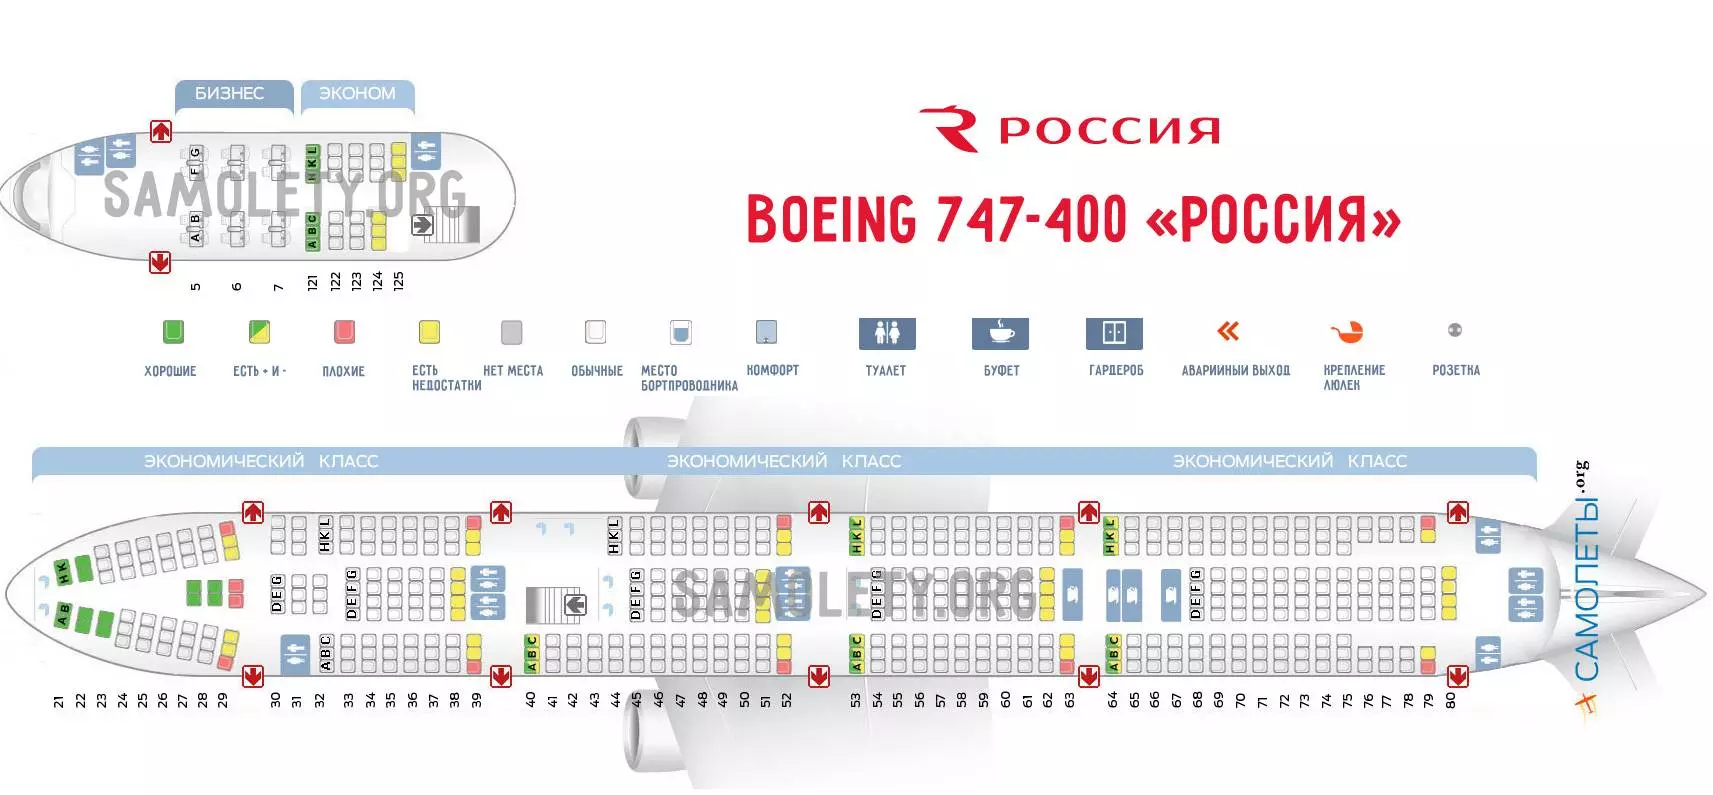 Рейс fv-5863 санкт-петербург – анталия россия авиабилеты расписание онлайн регистрация